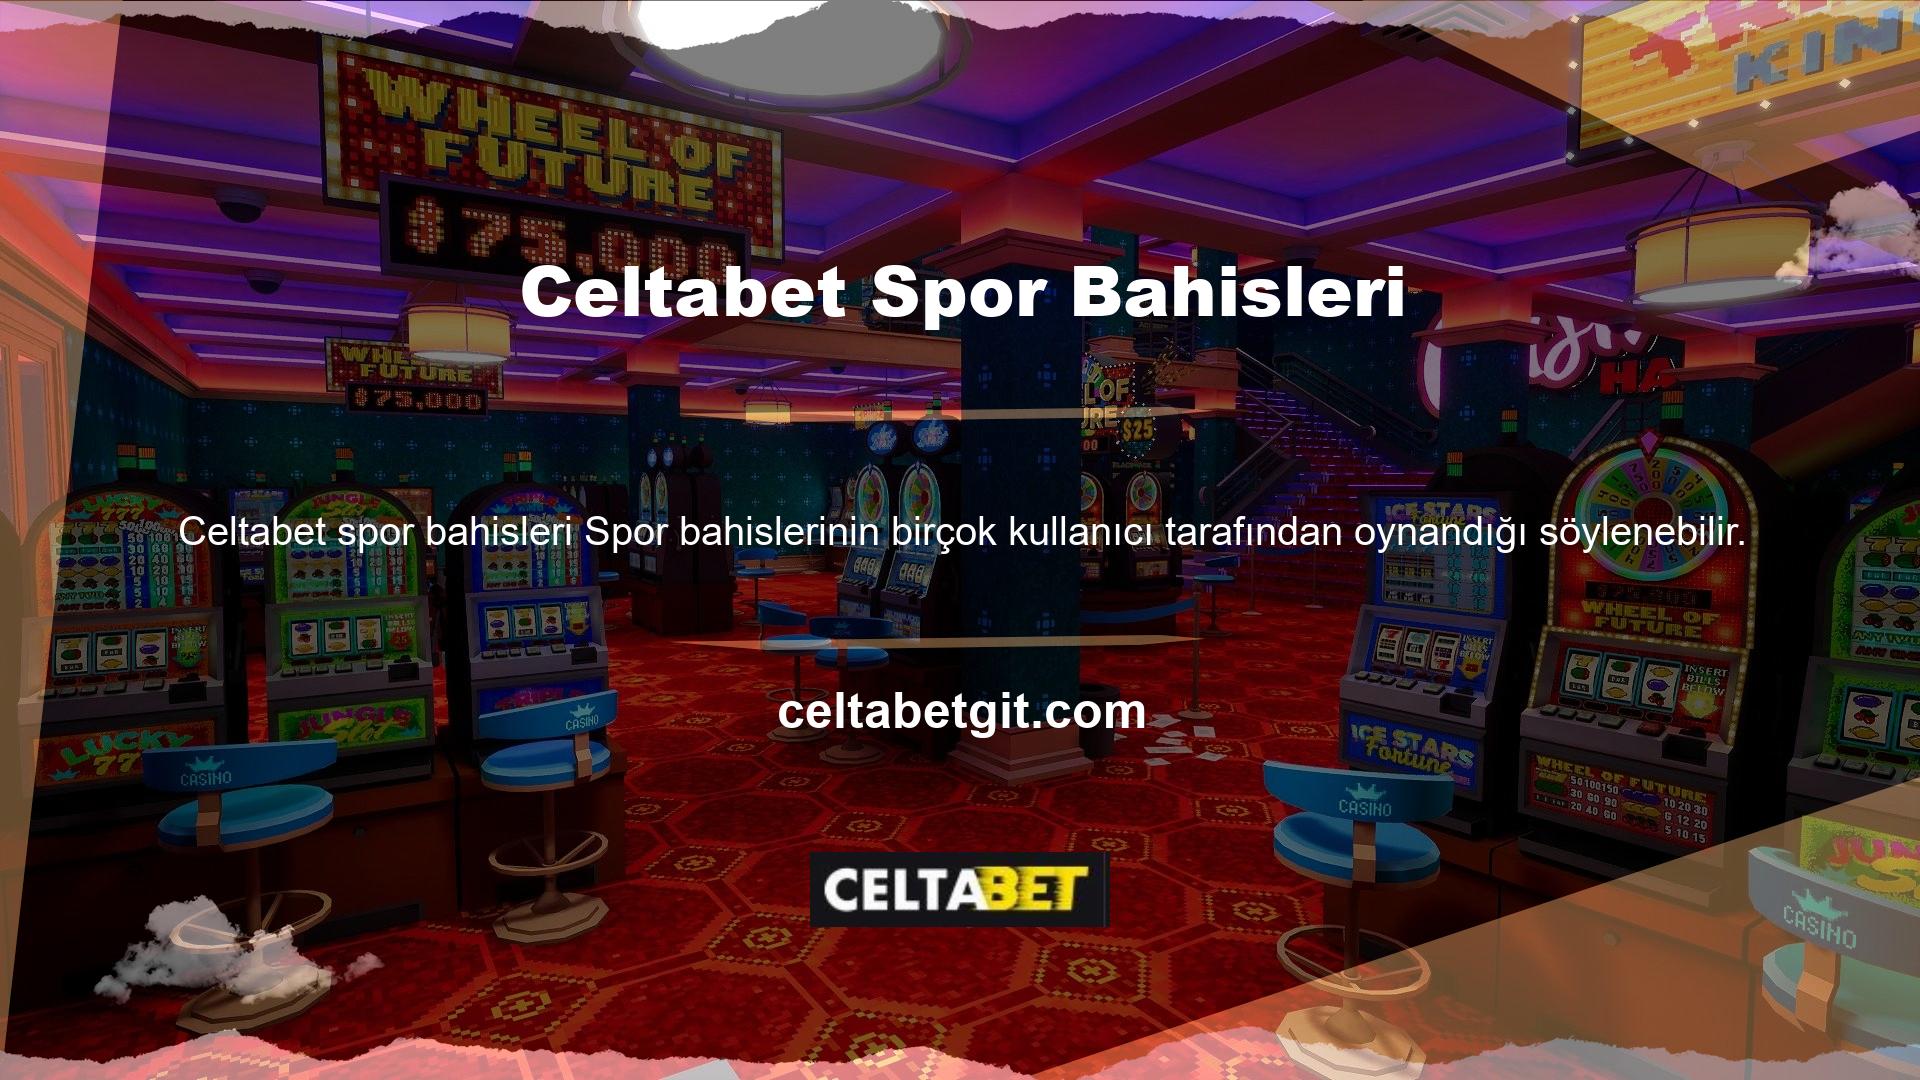 Celtabet casino oyunlarıyla tanınıyorsa spor bahisleri için oldukça faydalı bir bahis sitesidir